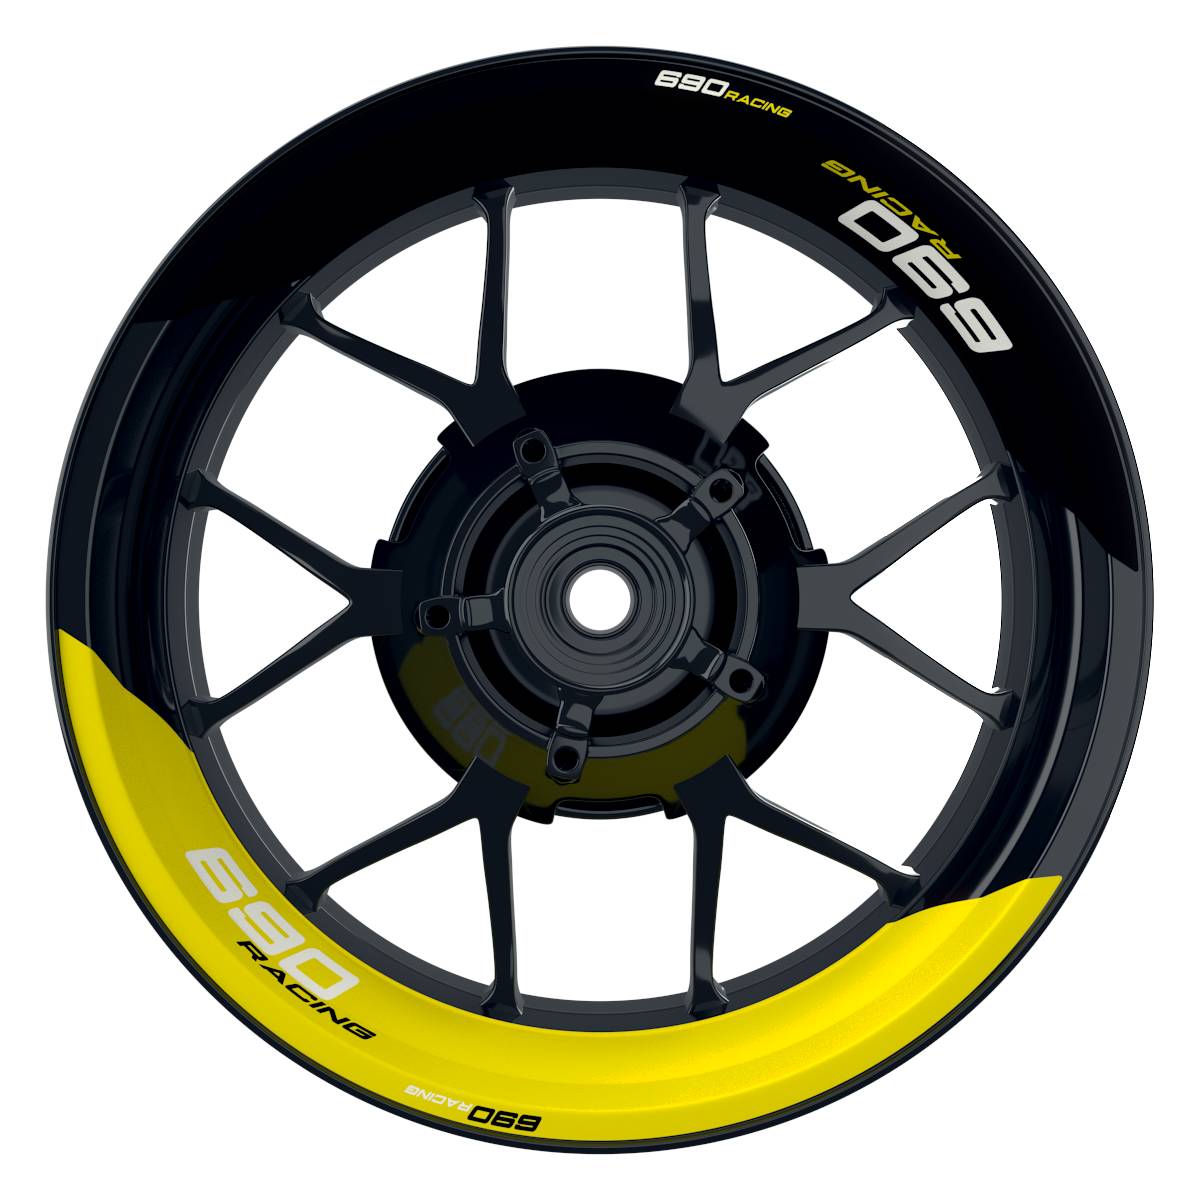 KTM Racing 690 halb halb schwarz gelb Frontansicht